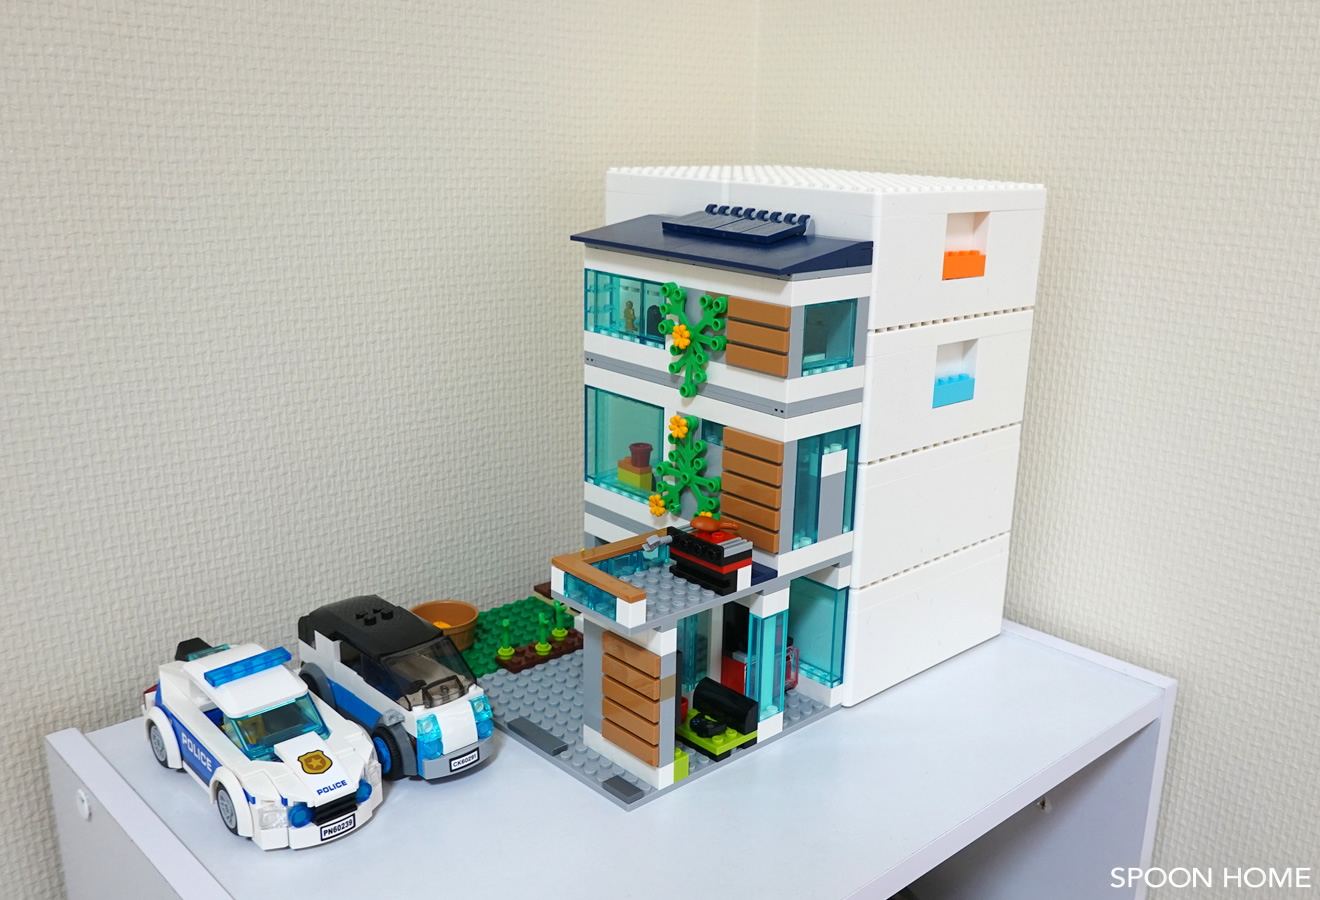 イケアとレゴのコラボグッズ・ビッグレクのブログ画像